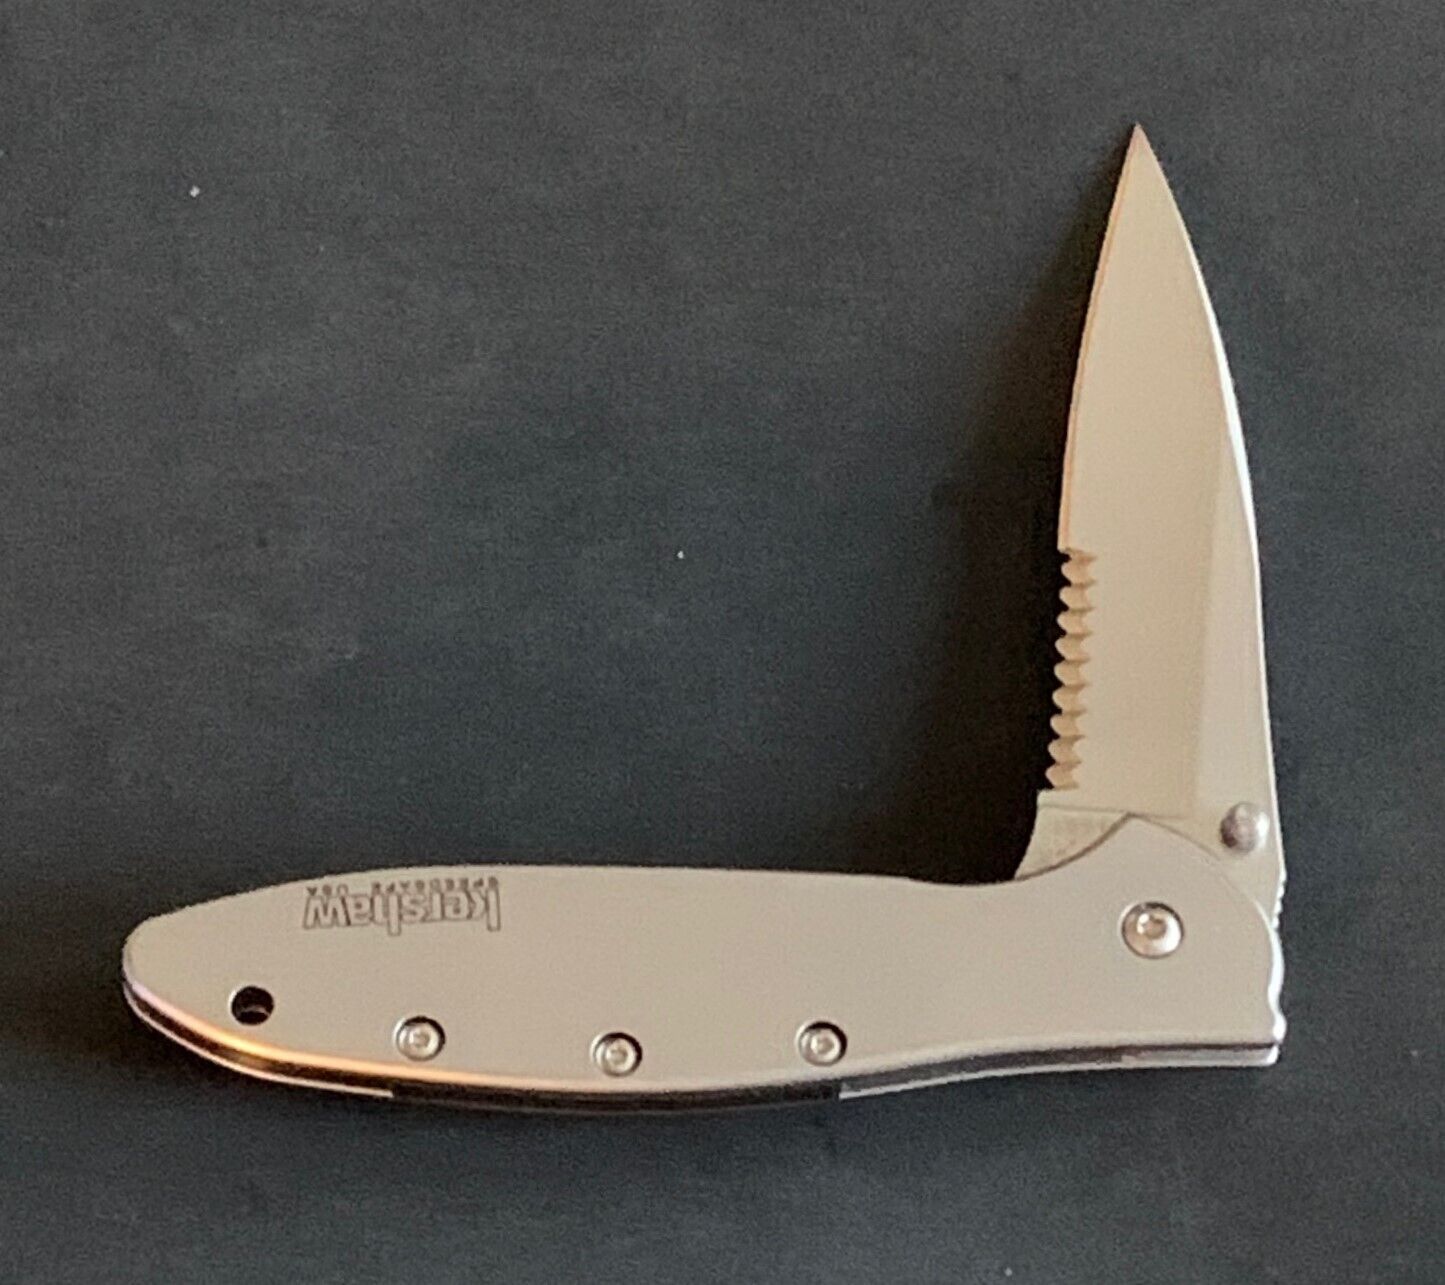 Kershaw KSX1660STB Serrated Leek Knife- Second